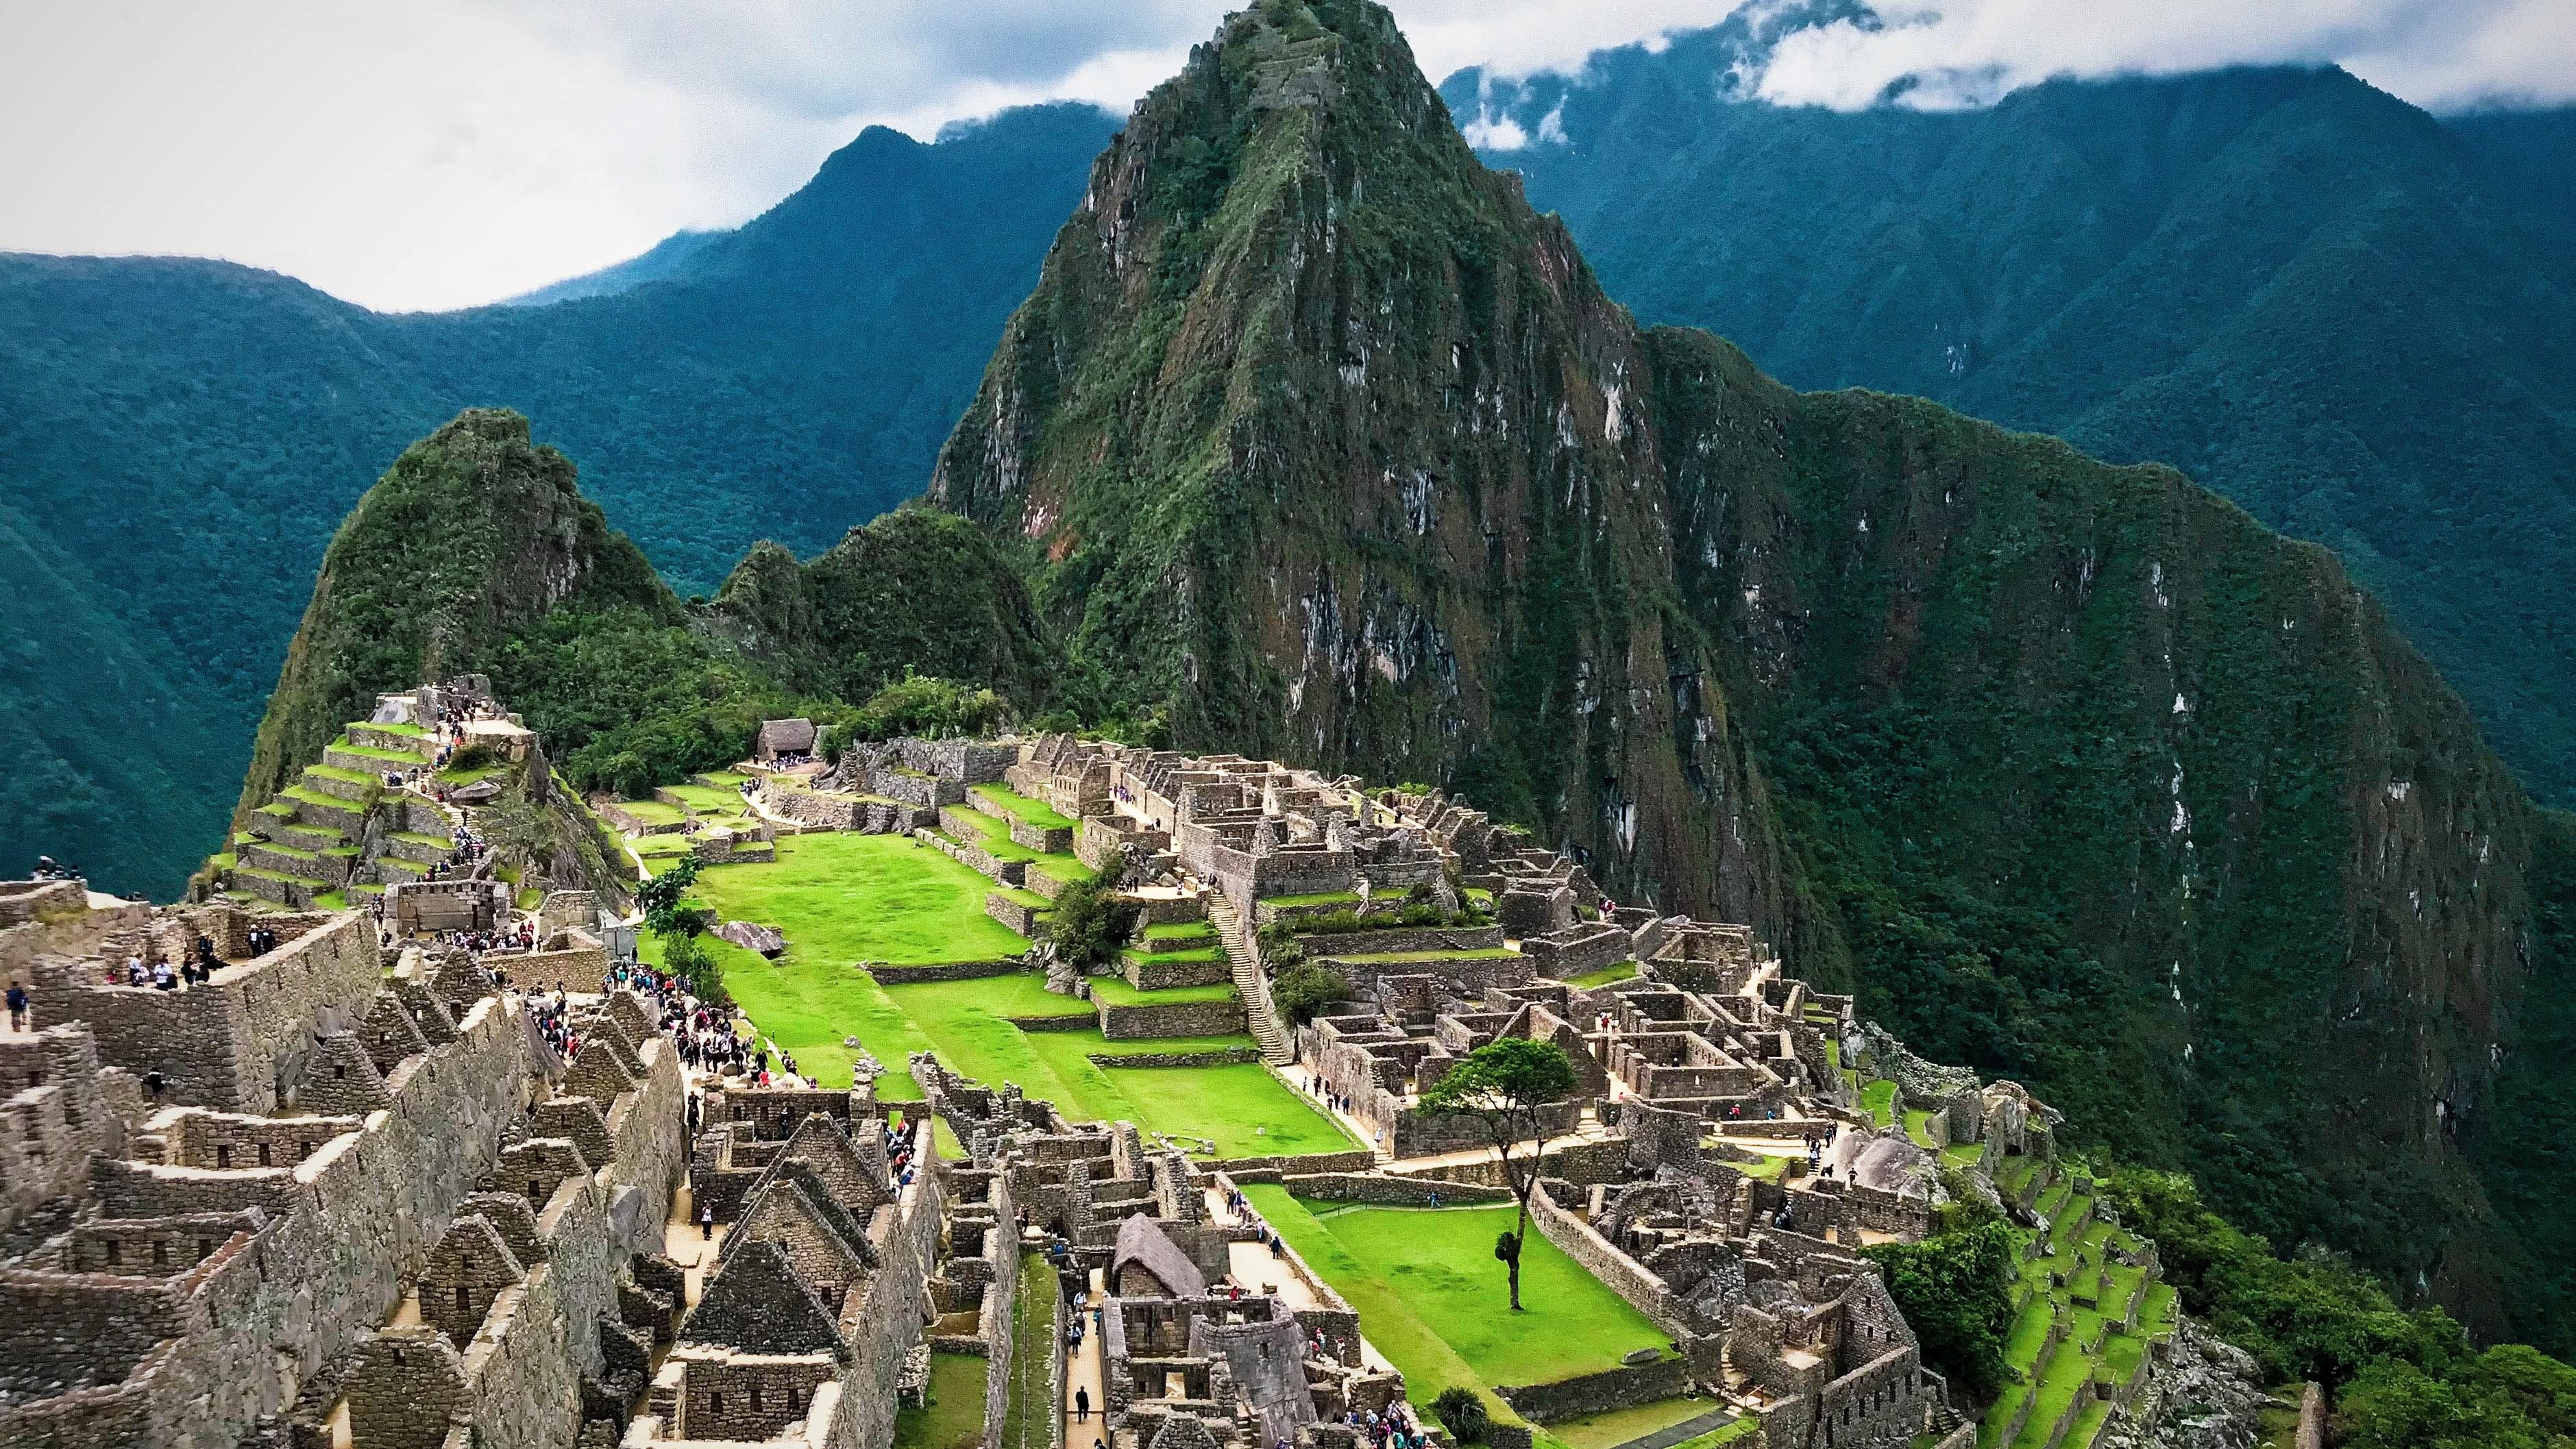 A Machu Picchu